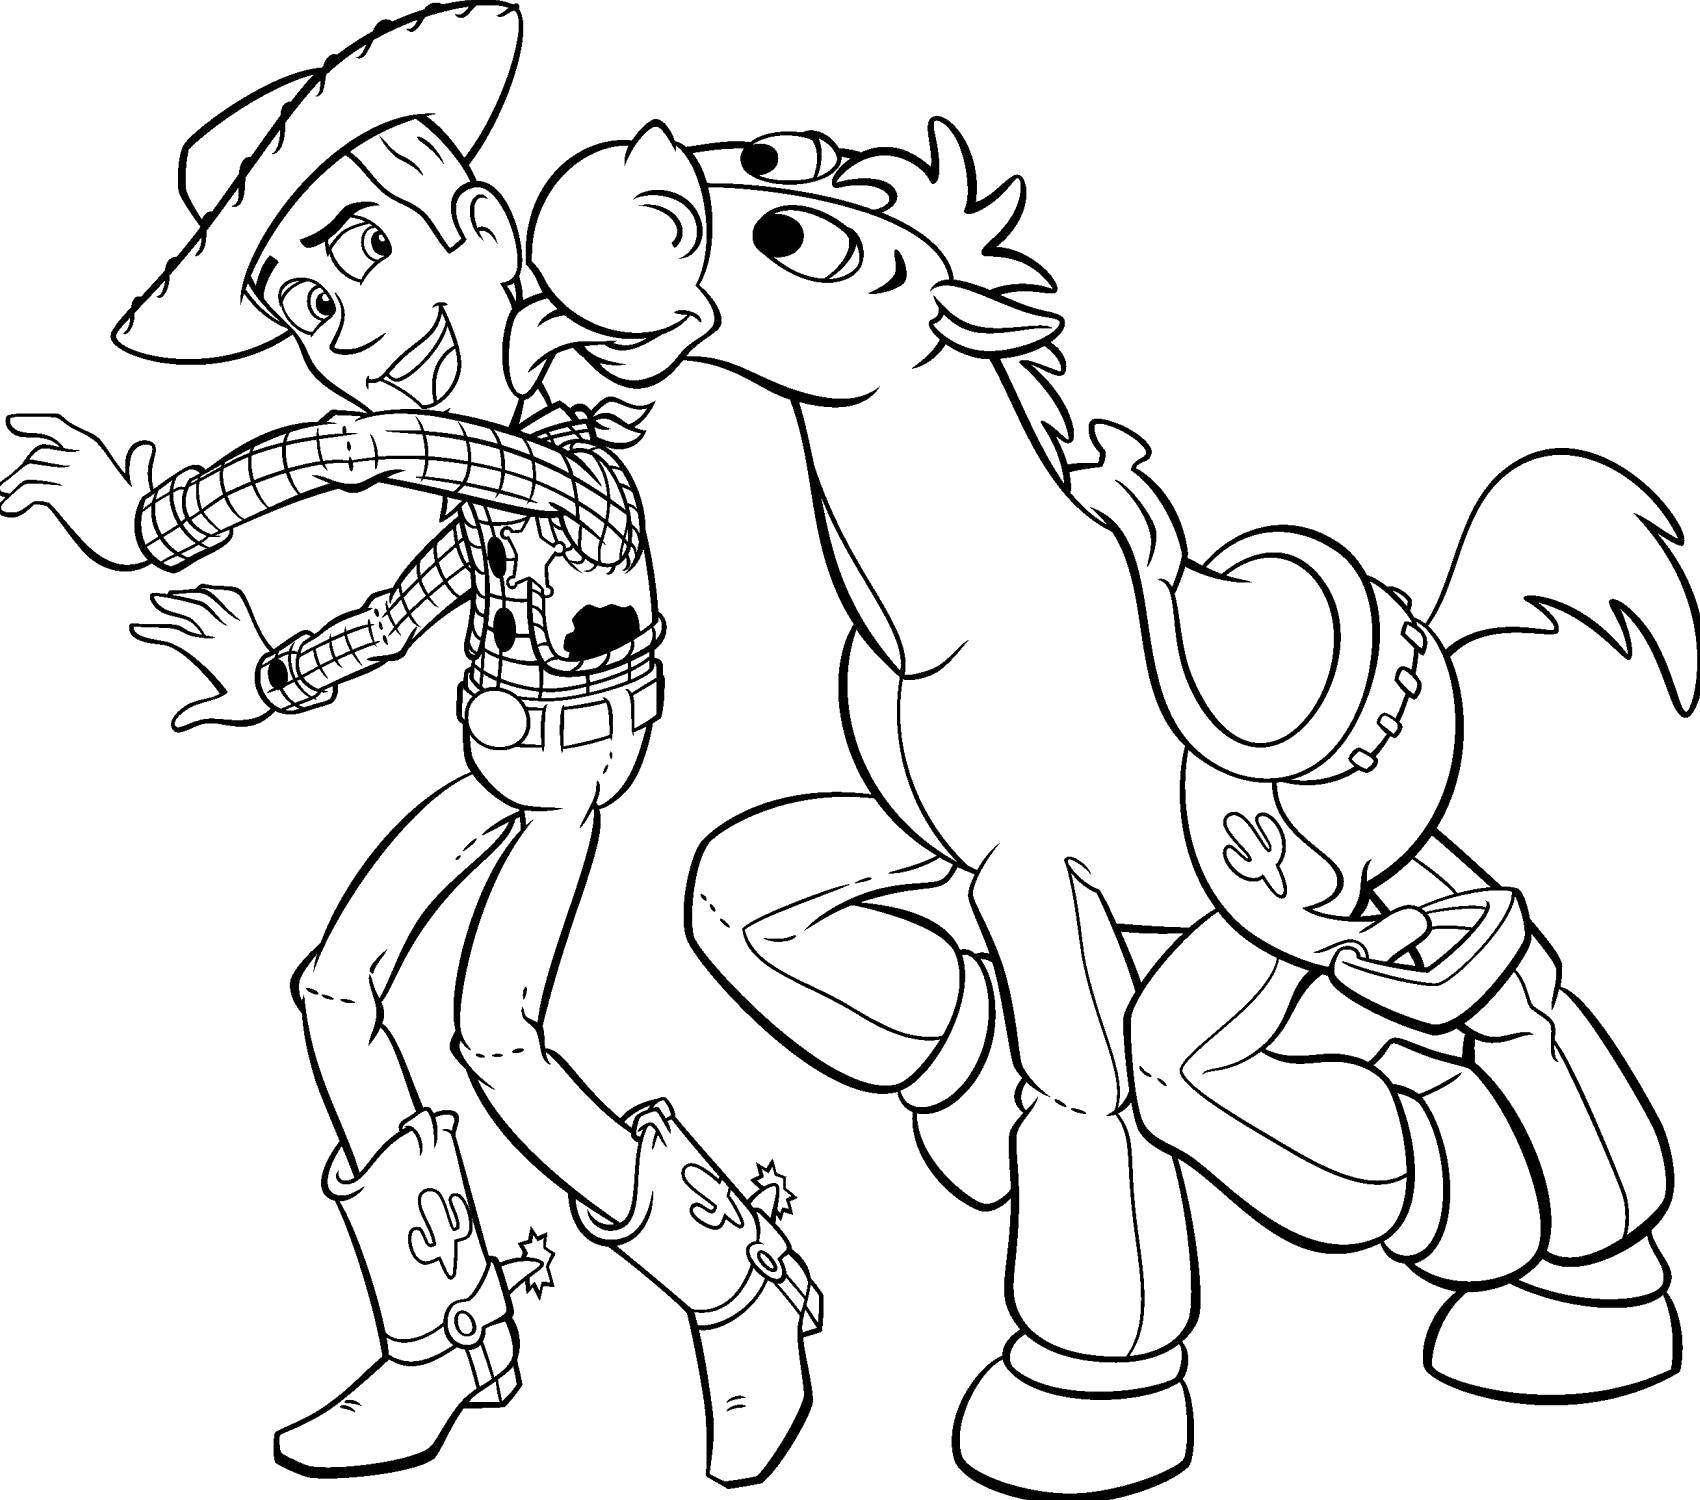 Раскраски  с Вуди по мультфильму Истории игрушек  Шериф вуди с конём